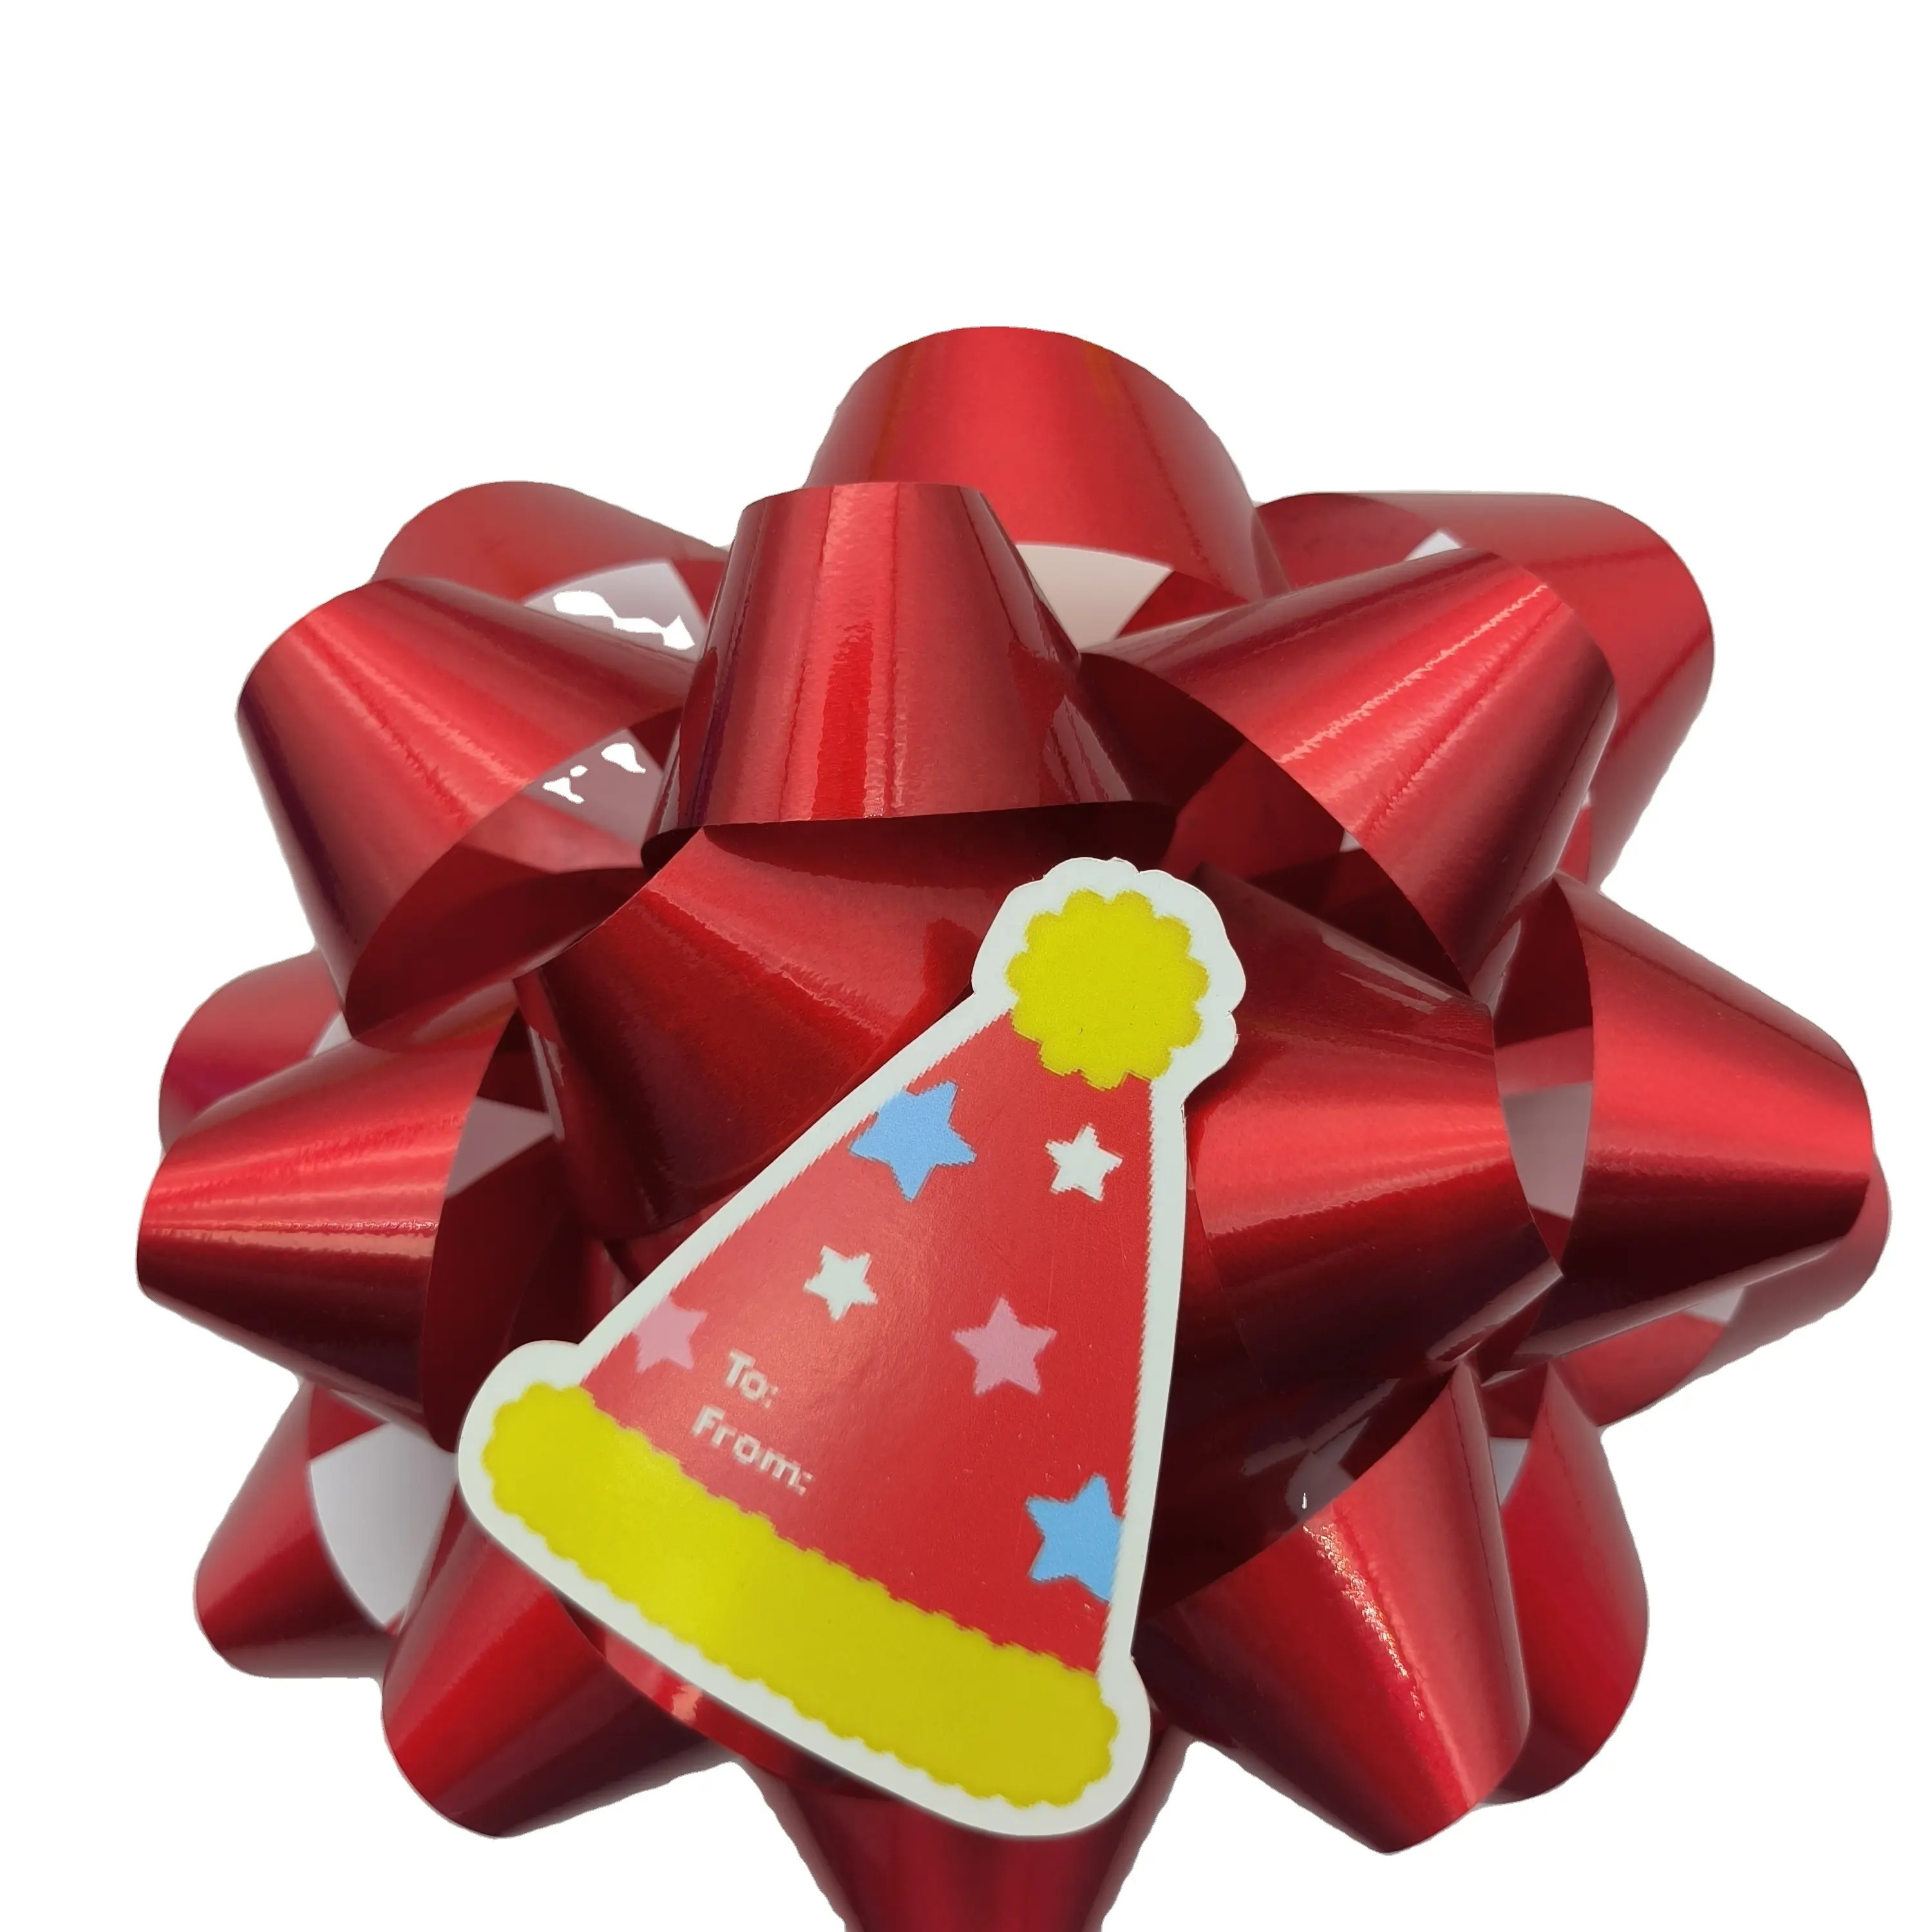 โบว์พลาสติกสีแดงเมทัลลิกสำหรับเทศกาลคริสต์มาสงานตามสั่งป้ายห้อยติดโบว์รูปดาวของขวัญสีแดง